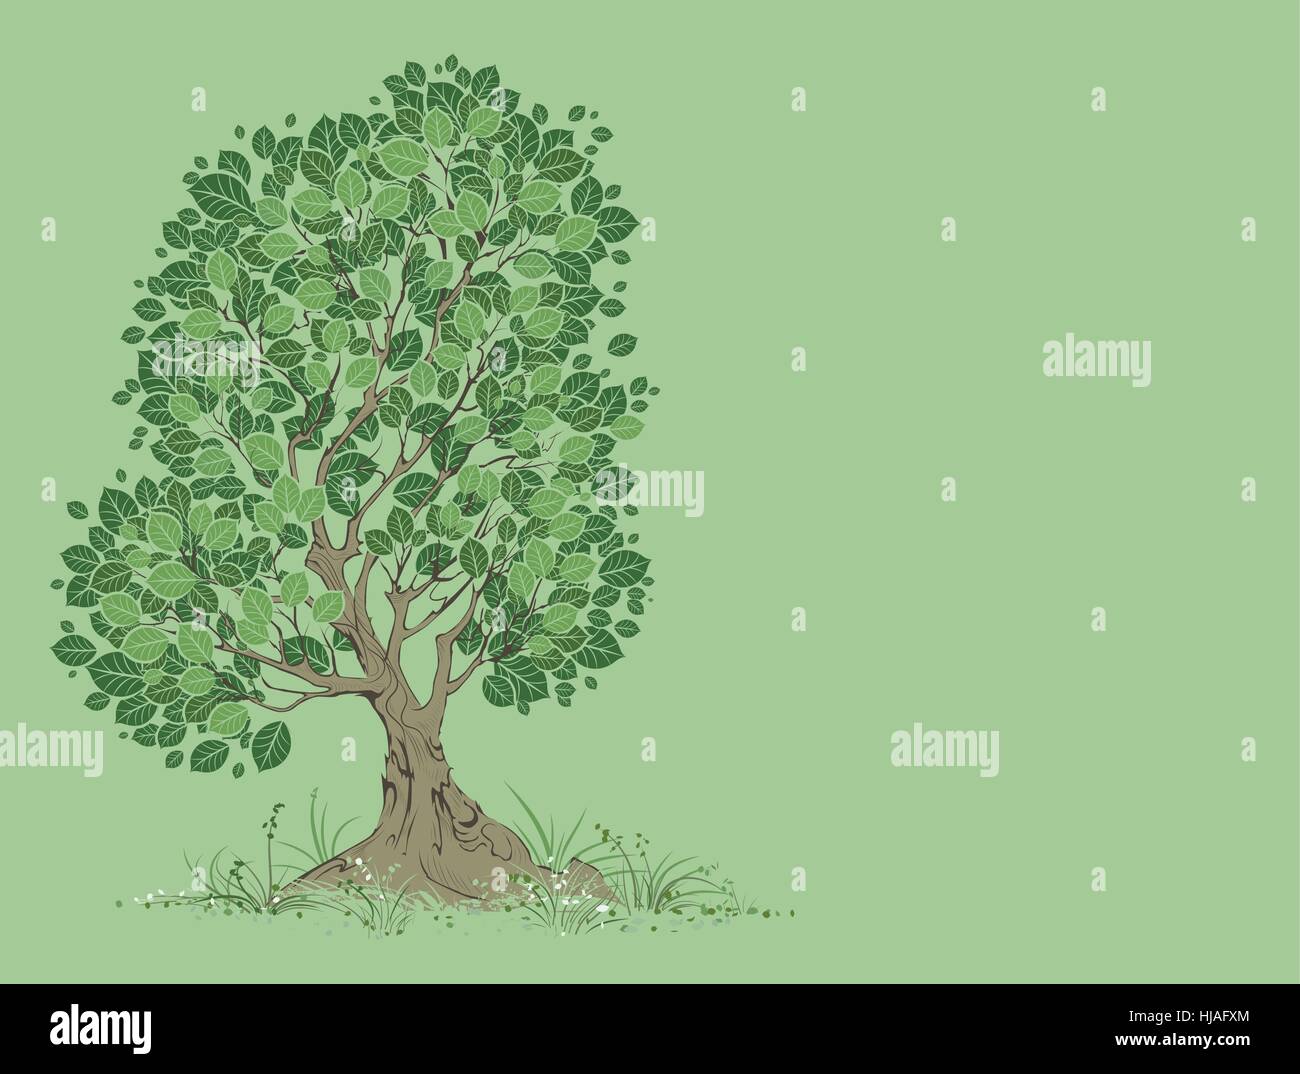 Vektor-kunstvoll bemalten Baum mit grünen Blättern auf einem grünen Hintergrund. Stock Vektor